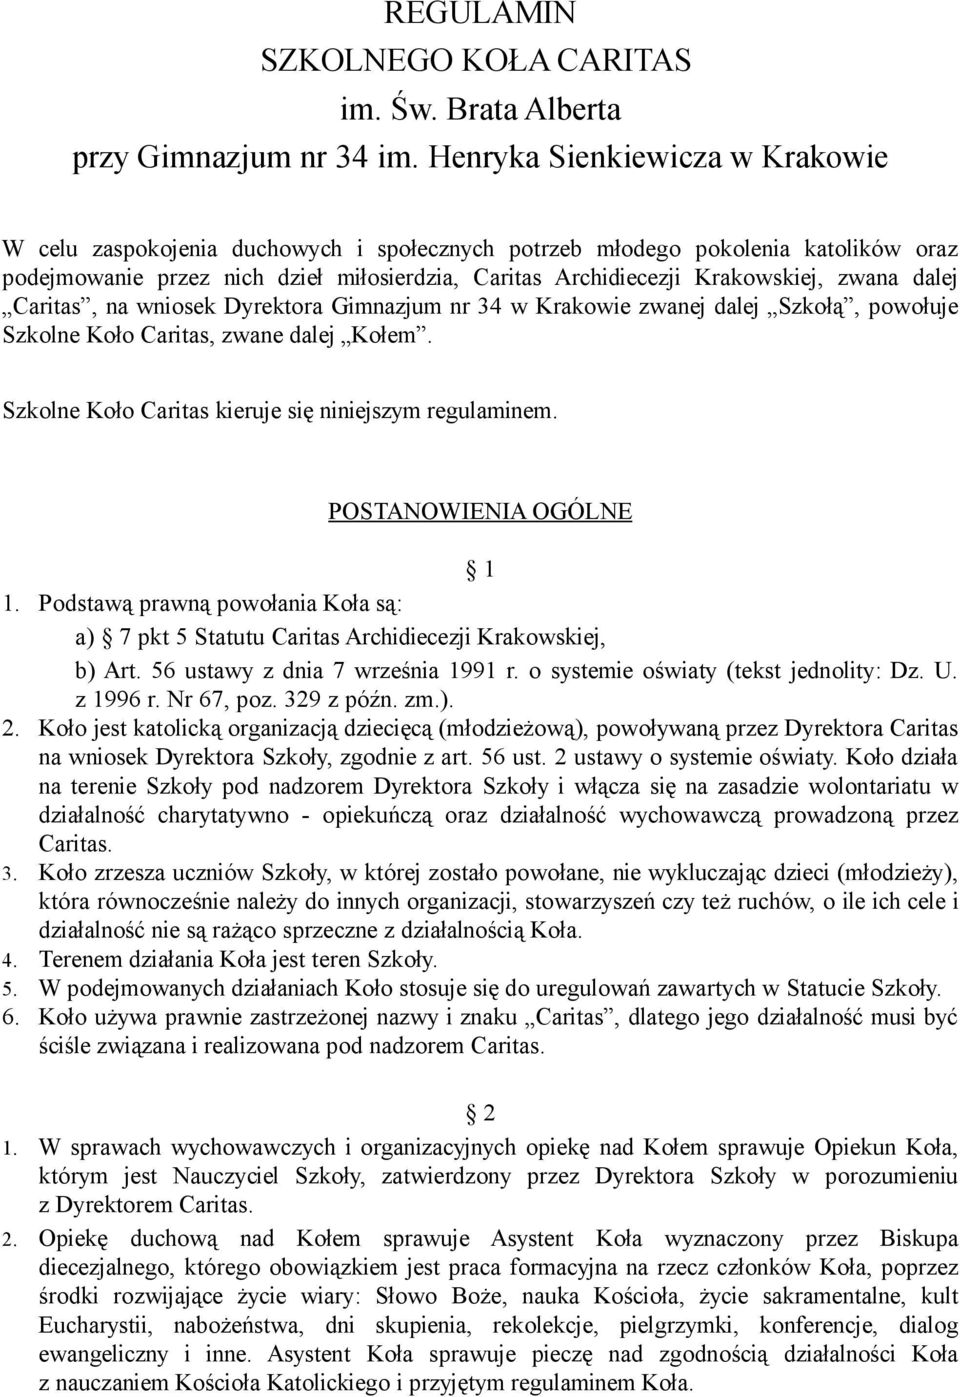 zwana dalej Caritas, na wniosek Dyrektora Gimnazjum nr 34 w Krakowie zwanej dalej Szkołą, powołuje Szkolne Koło Caritas, zwane dalej Kołem. Szkolne Koło Caritas kieruje się niniejszym regulaminem.